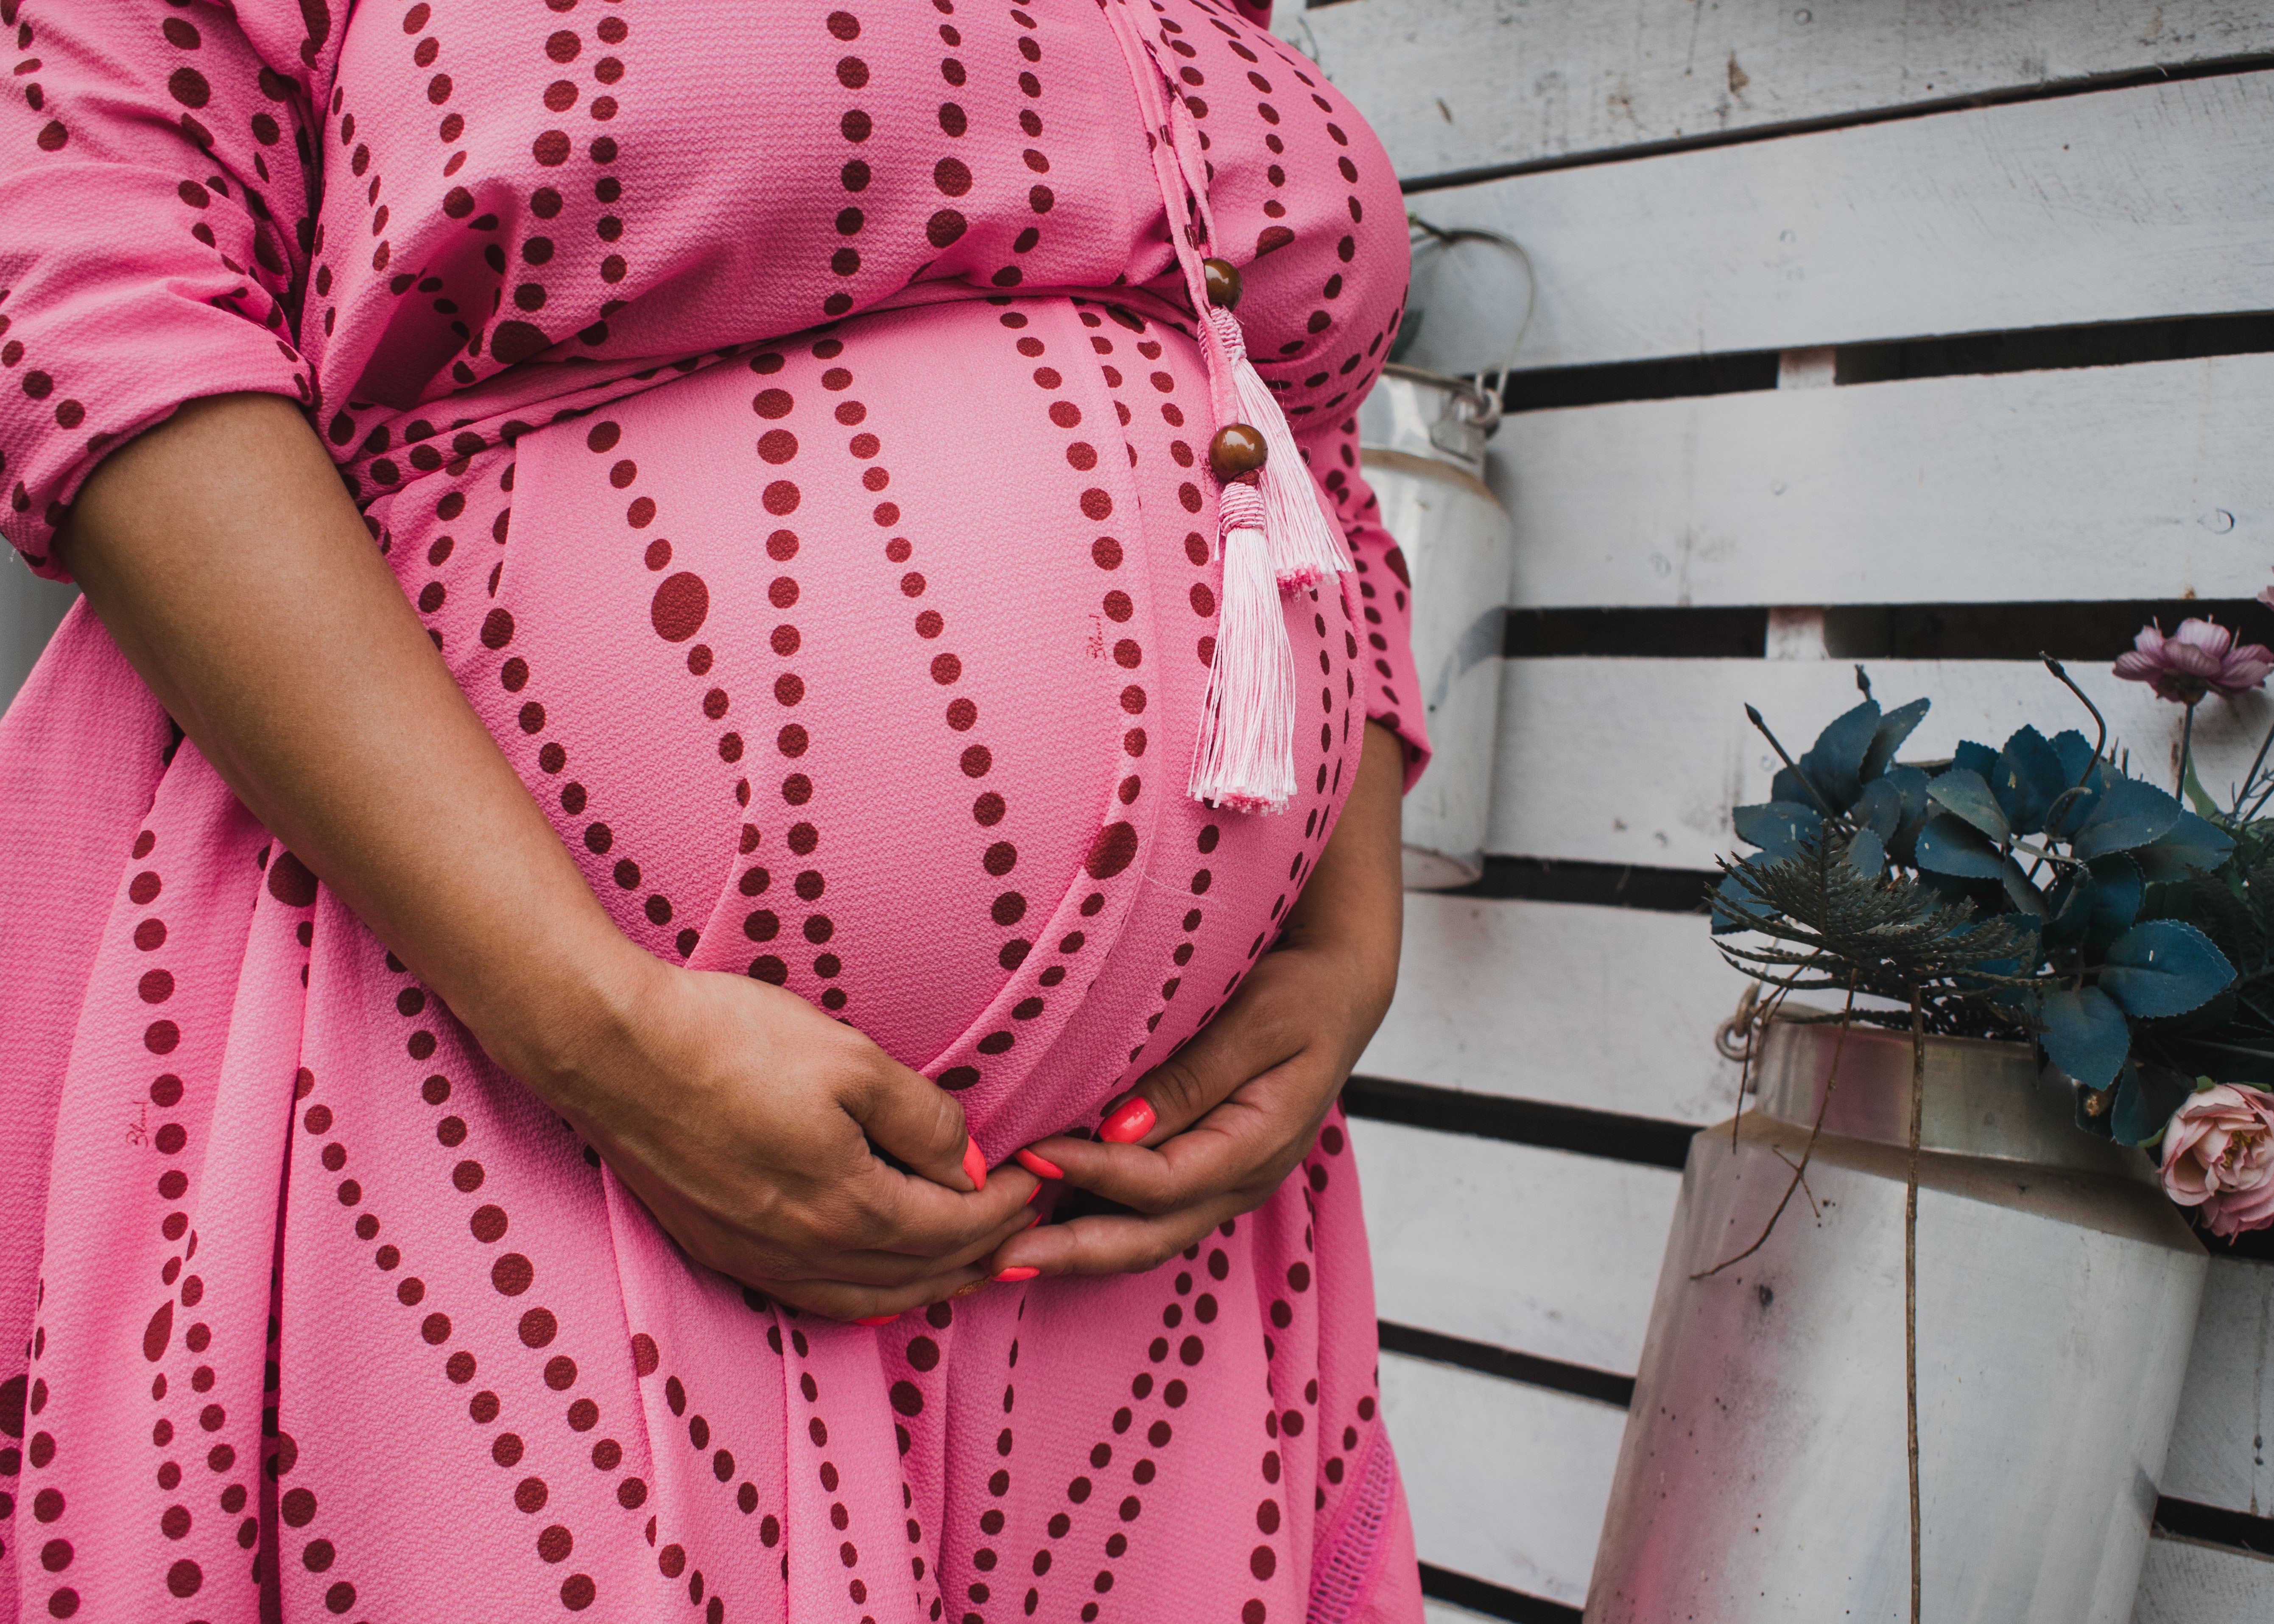 Grávidas com Covid-19 têm mais chance de parto prematuro, diz estudo (Foto: Unsplash)